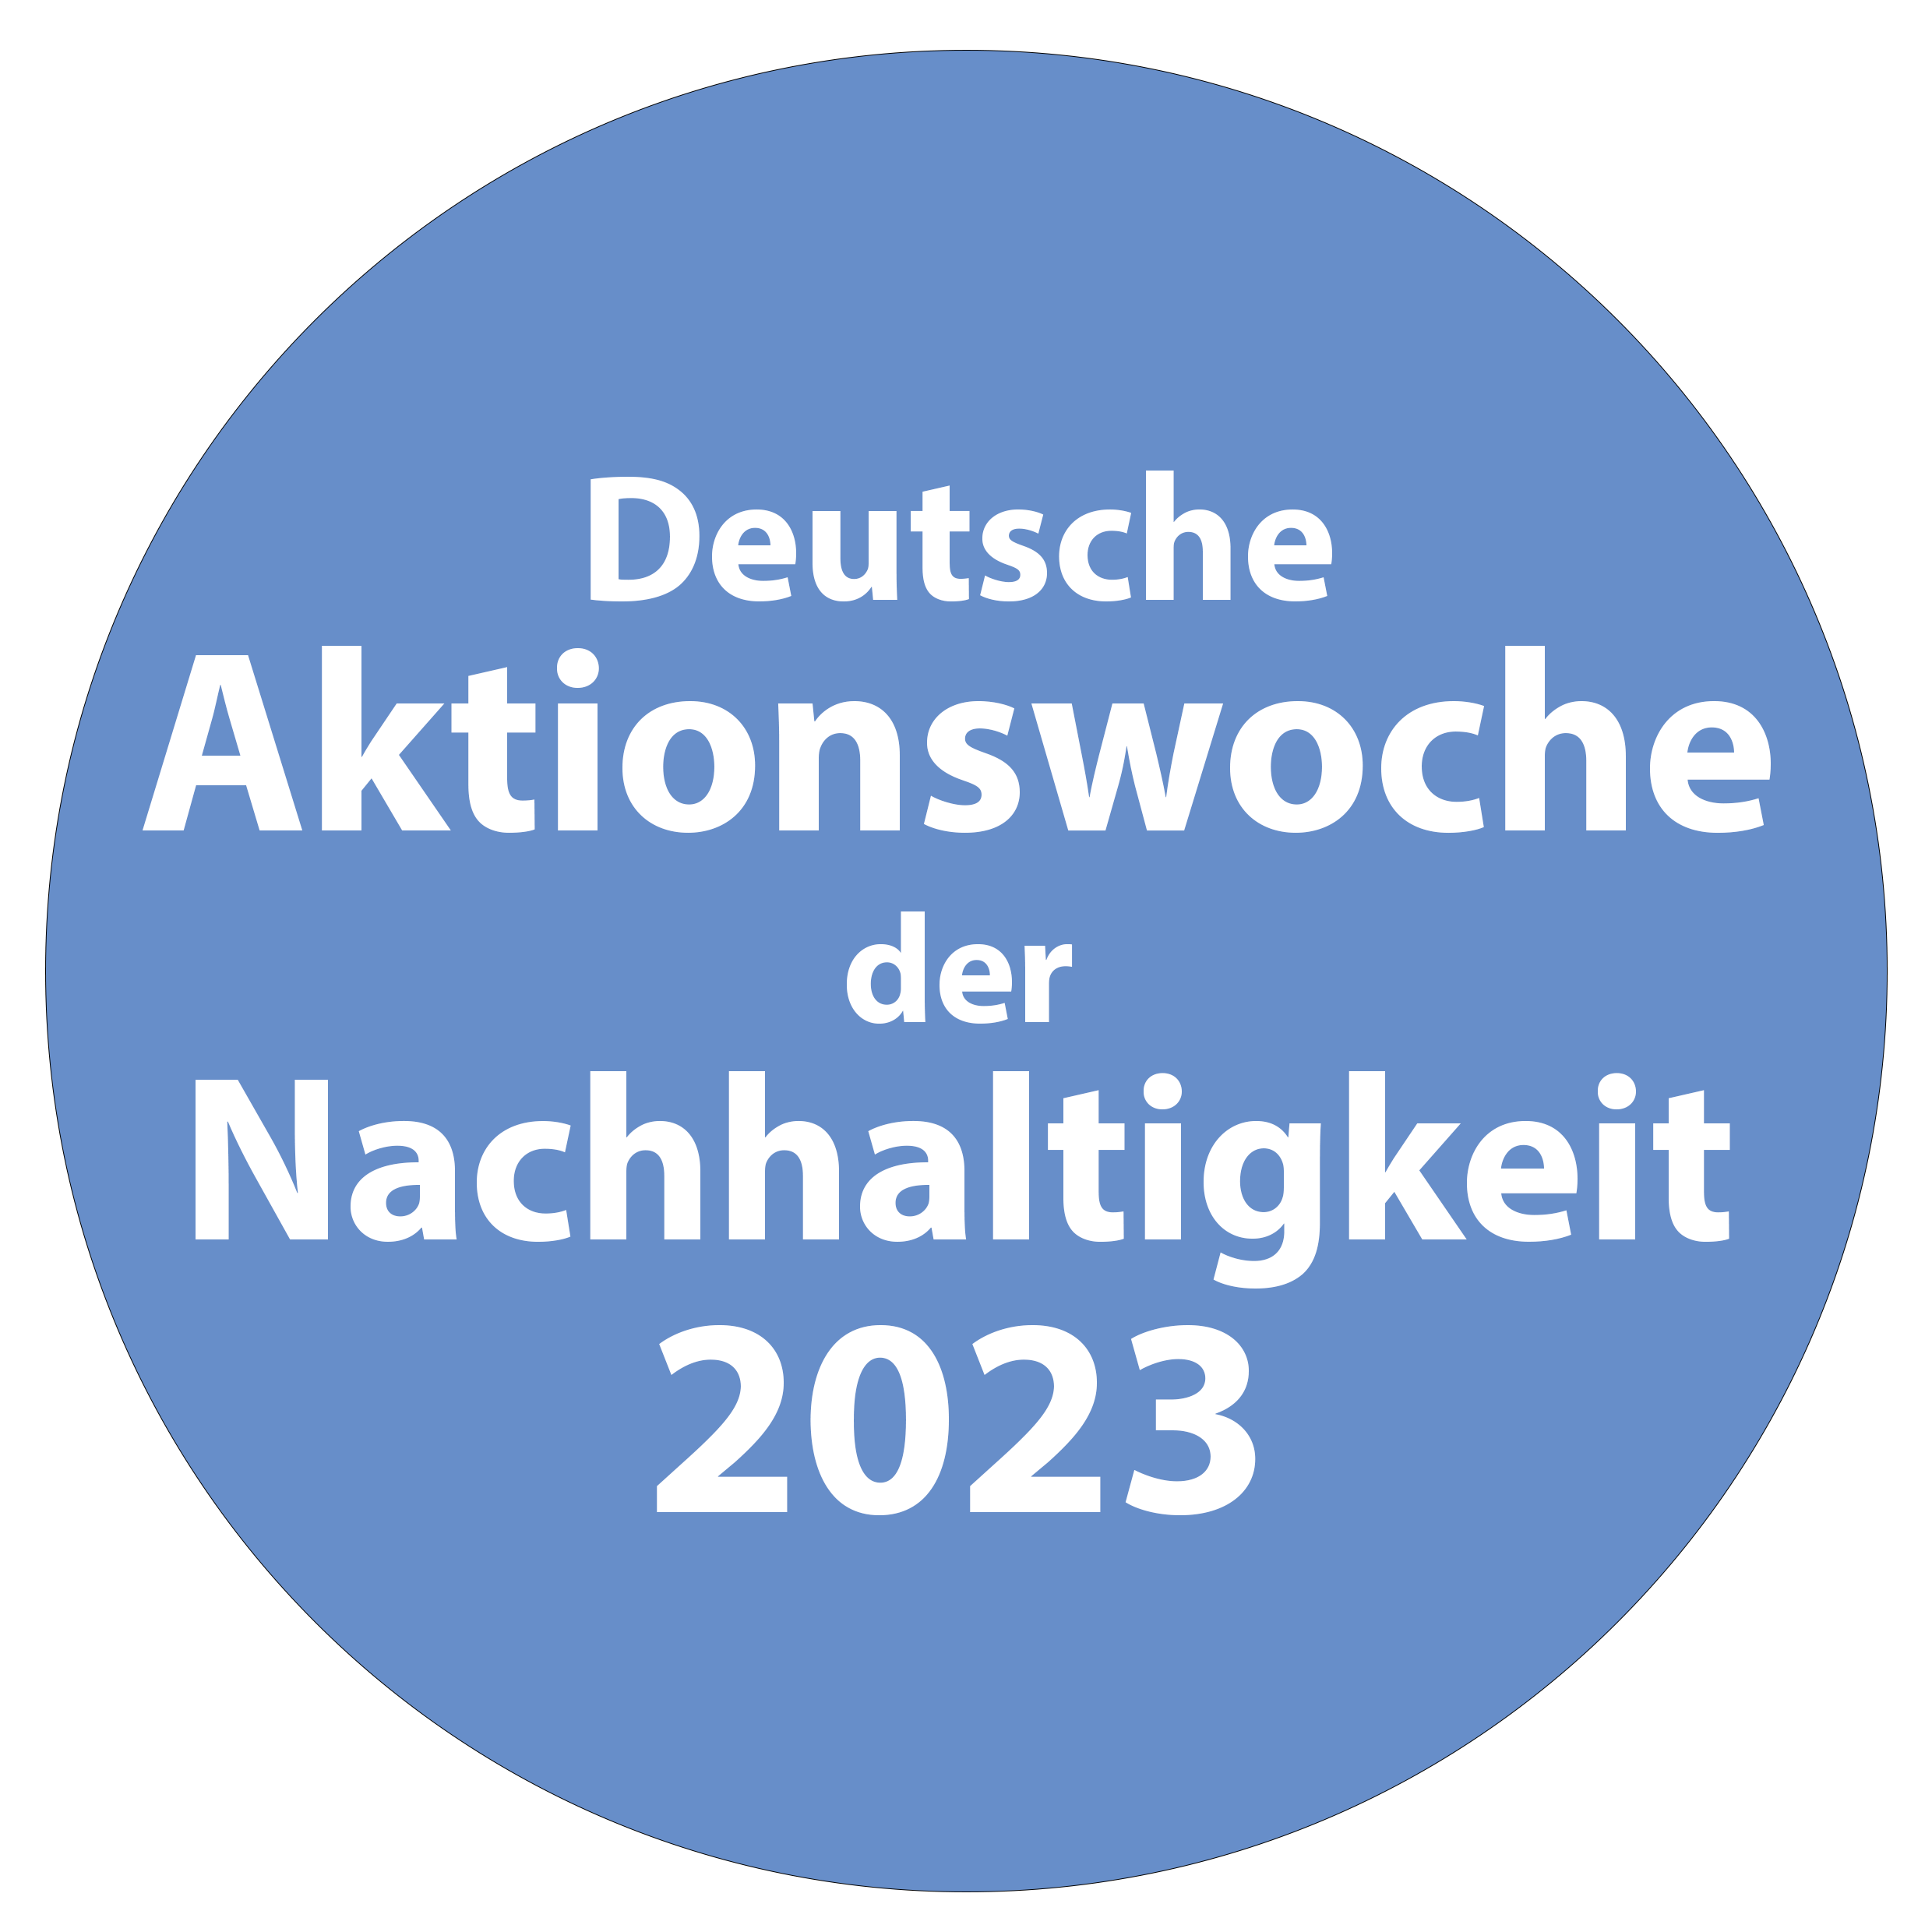 Deutsche Aktionstage Nachhaltigkeit 2023